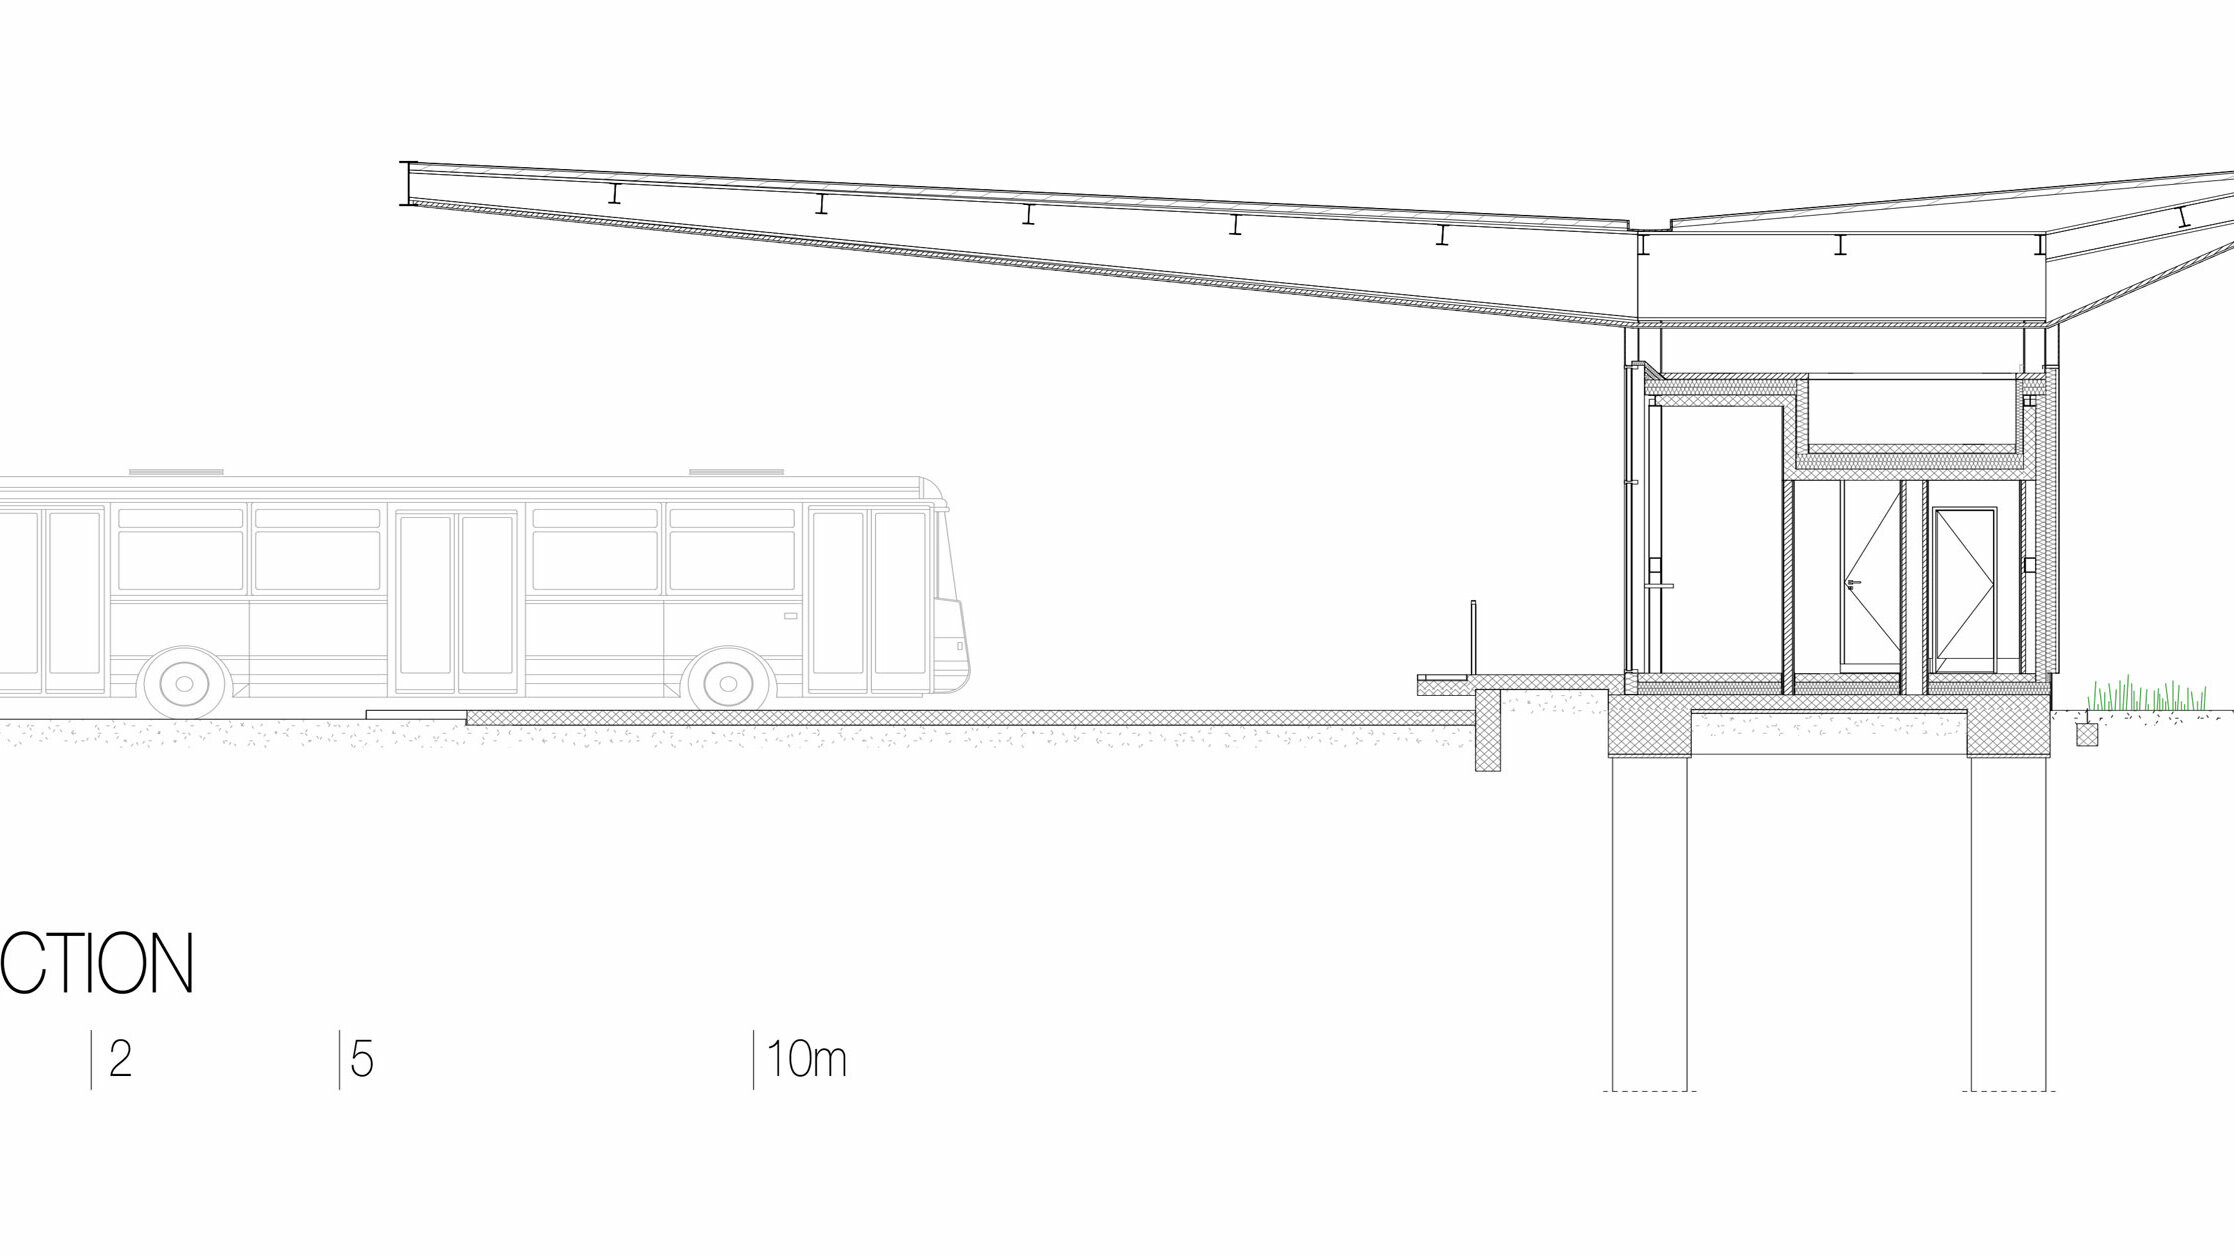 Die Zeichnung zeigt einen Querschnitt durch die Bushaltestelle "Autobusni Kolodvor Slavonski Brod" in Kroatien. Der Schnitt illustriert die Konstruktion des Gebäudes, einschließlich des weißen Prefalz-Dachs von PREFA, das auf schlanken Säulen ruht und weit über die darunterliegenden Bereiche hinausragt. Unter dem Dach befinden sich die Innenräume der Haltestelle mit klaren Linien und großen Glasflächen. Die Zeichnung zeigt auch die Fundamentkonstruktion und die unterirdischen Stützen, die die Struktur tragen. Auf der linken Seite ist ein Bus dargestellt, der die Größenverhältnisse veranschaulicht. Der Querschnitt betont die moderne und funktionale Bauweise der Haltestelle sowie die Integration von Glas und Aluminium in das Design.